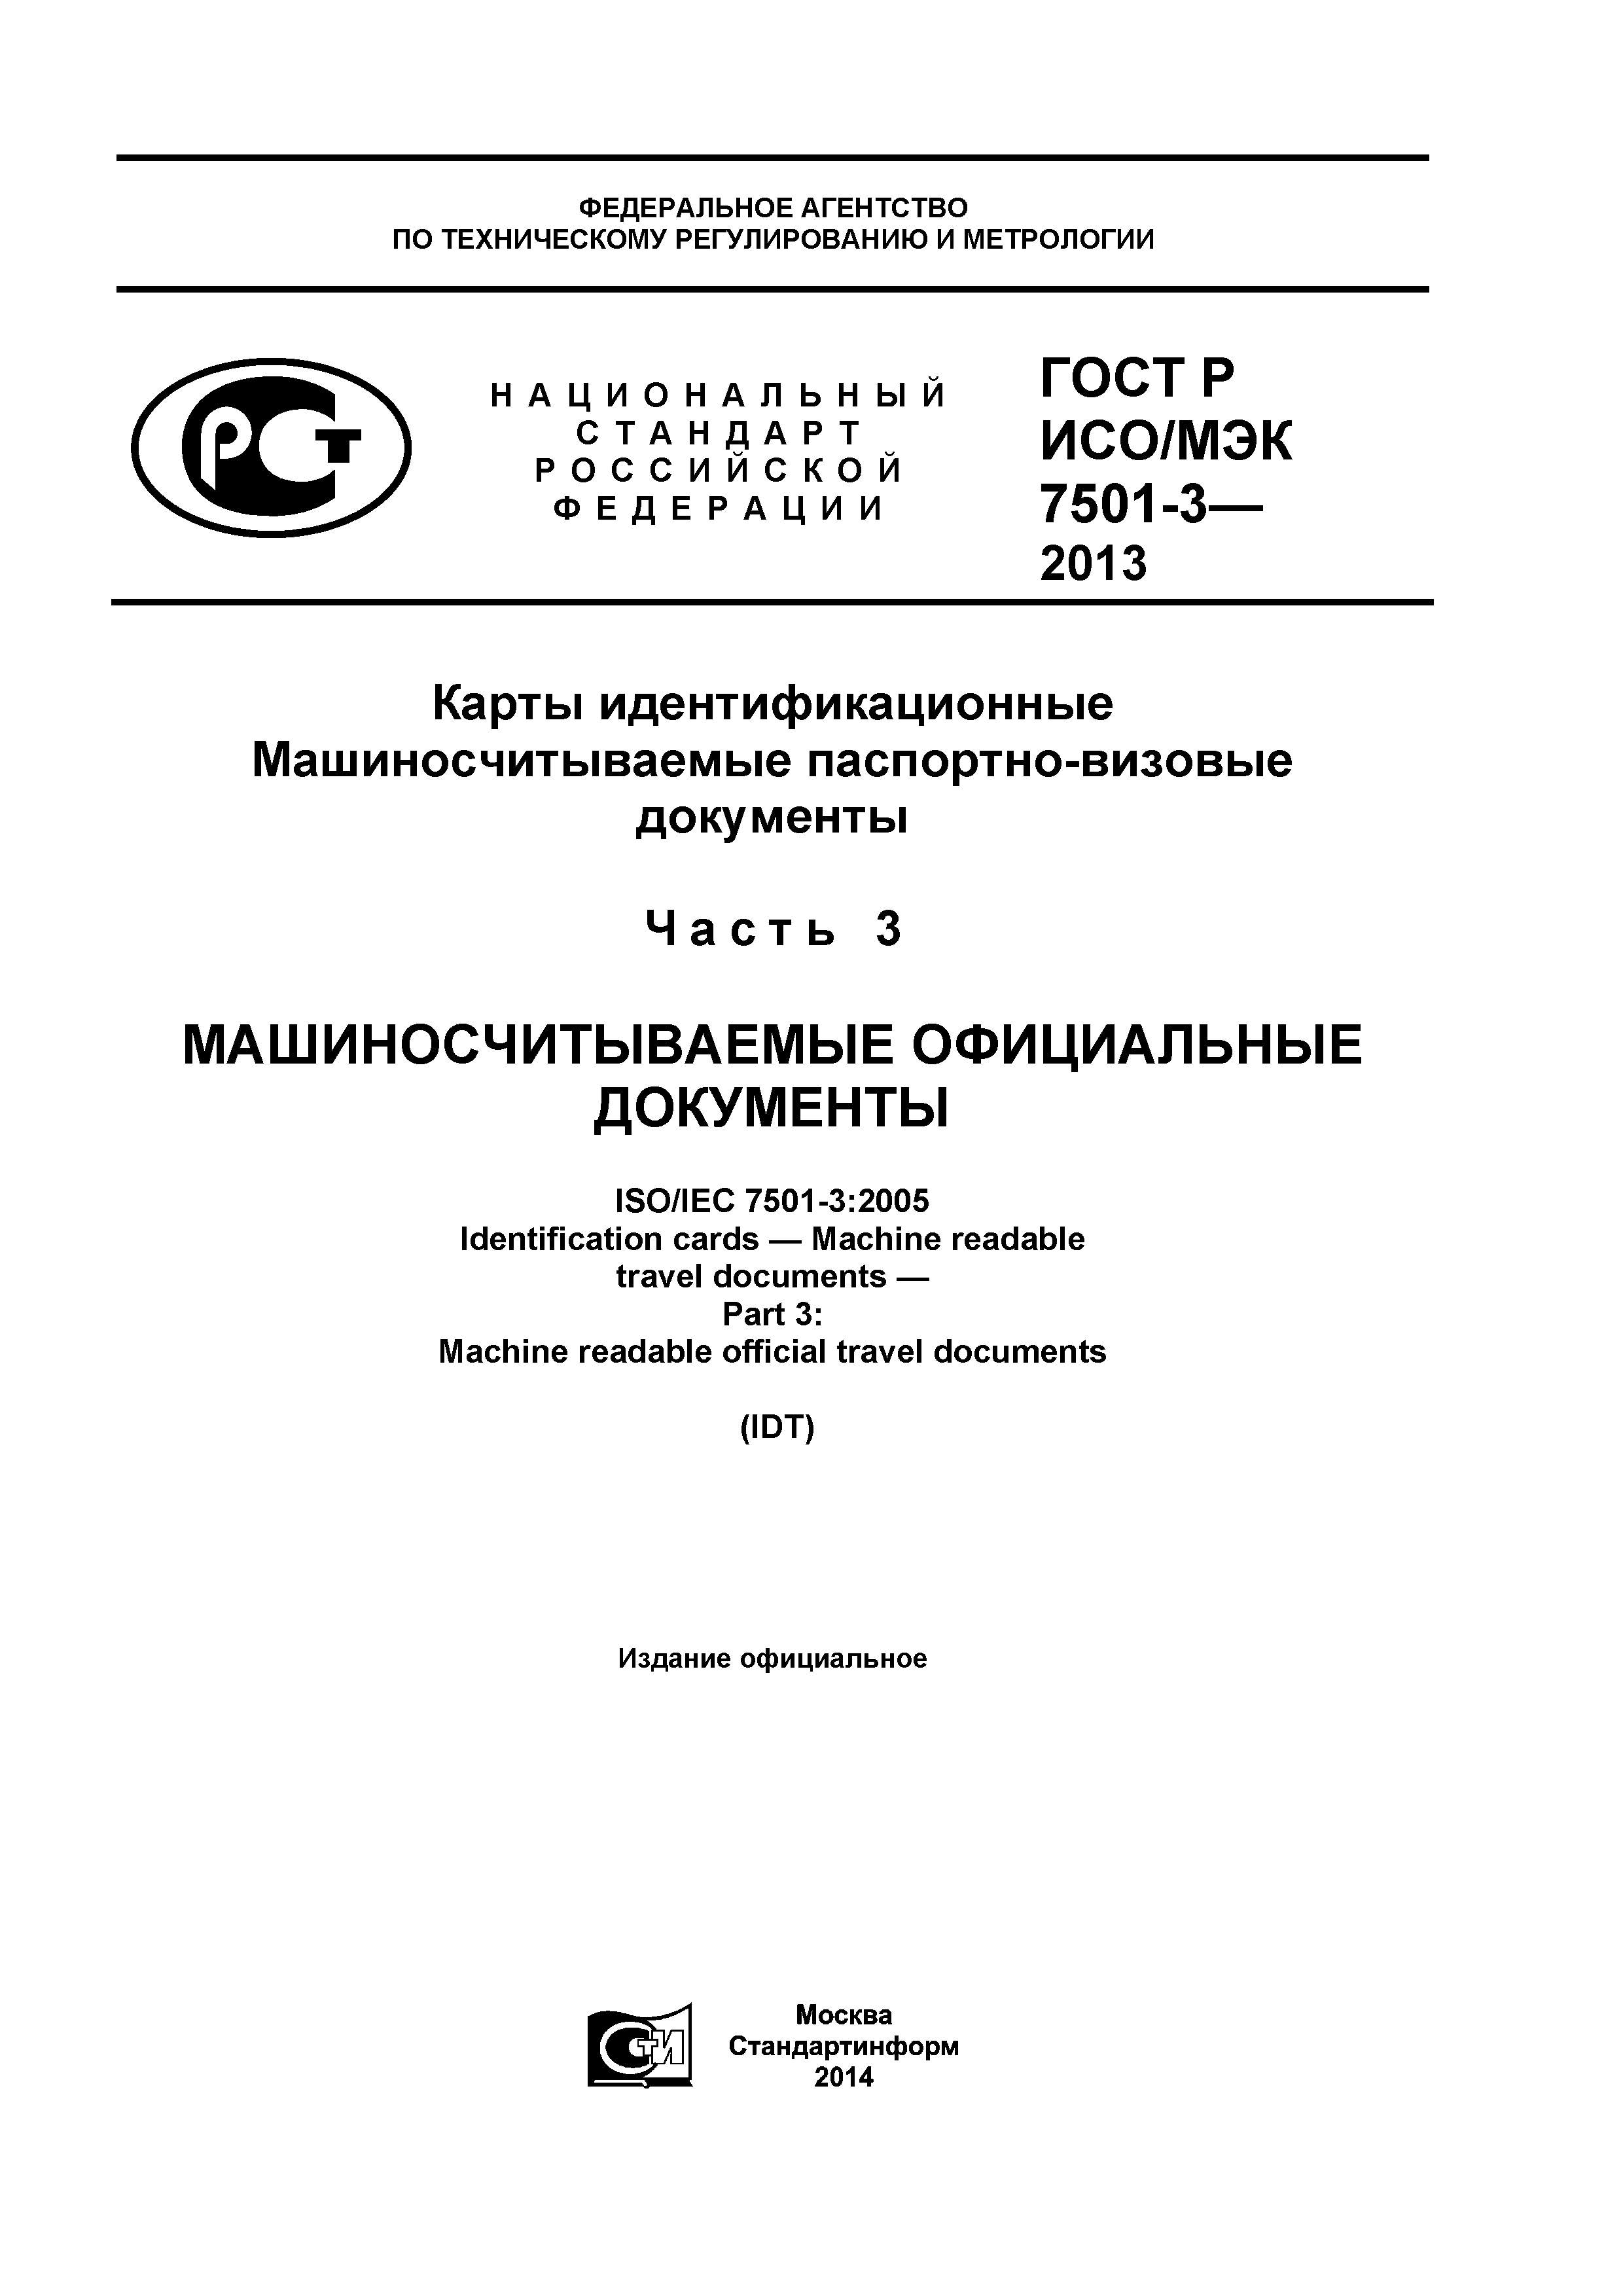 ГОСТ Р ИСО/МЭК 7501-3-2013